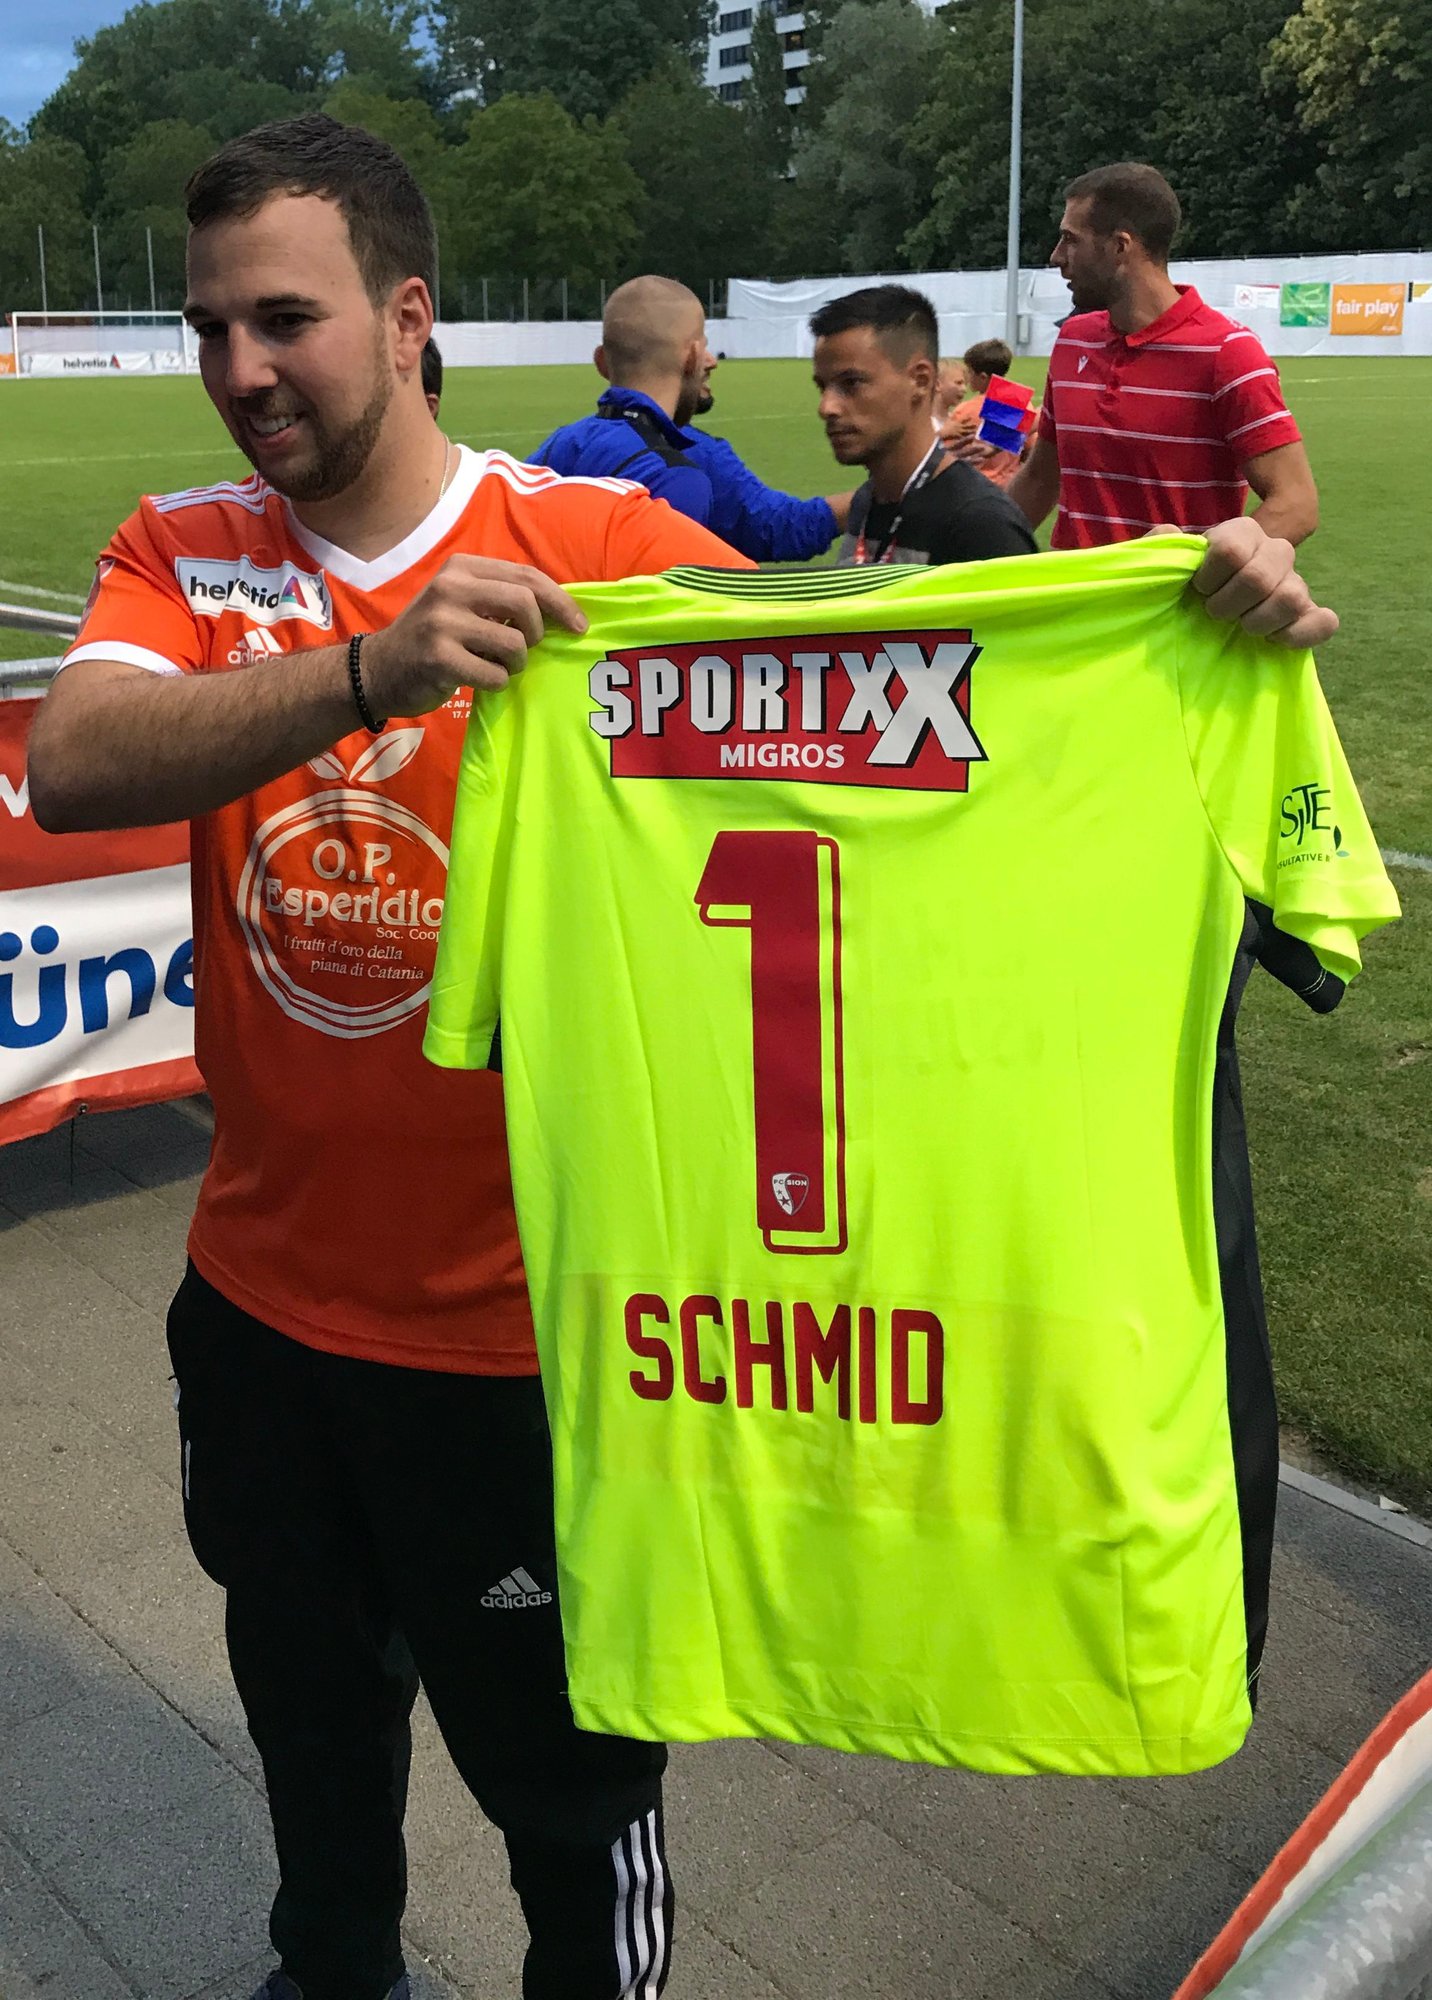 Marco Schmid, le gardien du FC Allschwil aux origines valaisannes, présente fièrement le maillot personnalisé que lui a offert le FC Sion